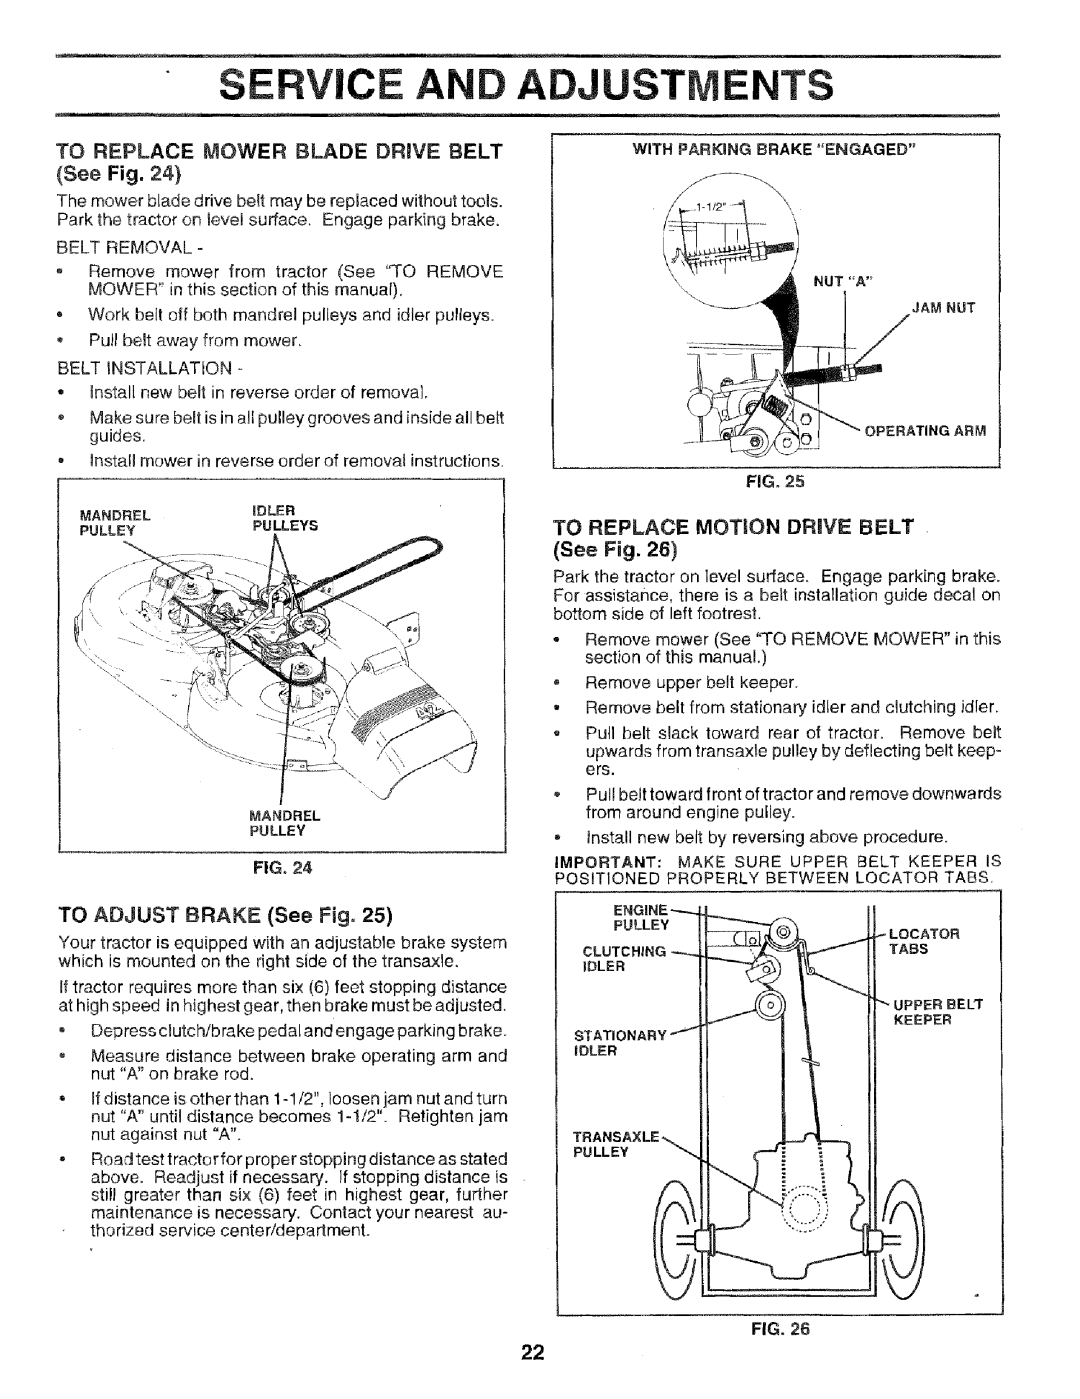 Craftsman 917.256544 owner manual Service, Adju, TO ADJUST BRAKE See Fig, To Replace Motion Drive Belt, Ents 